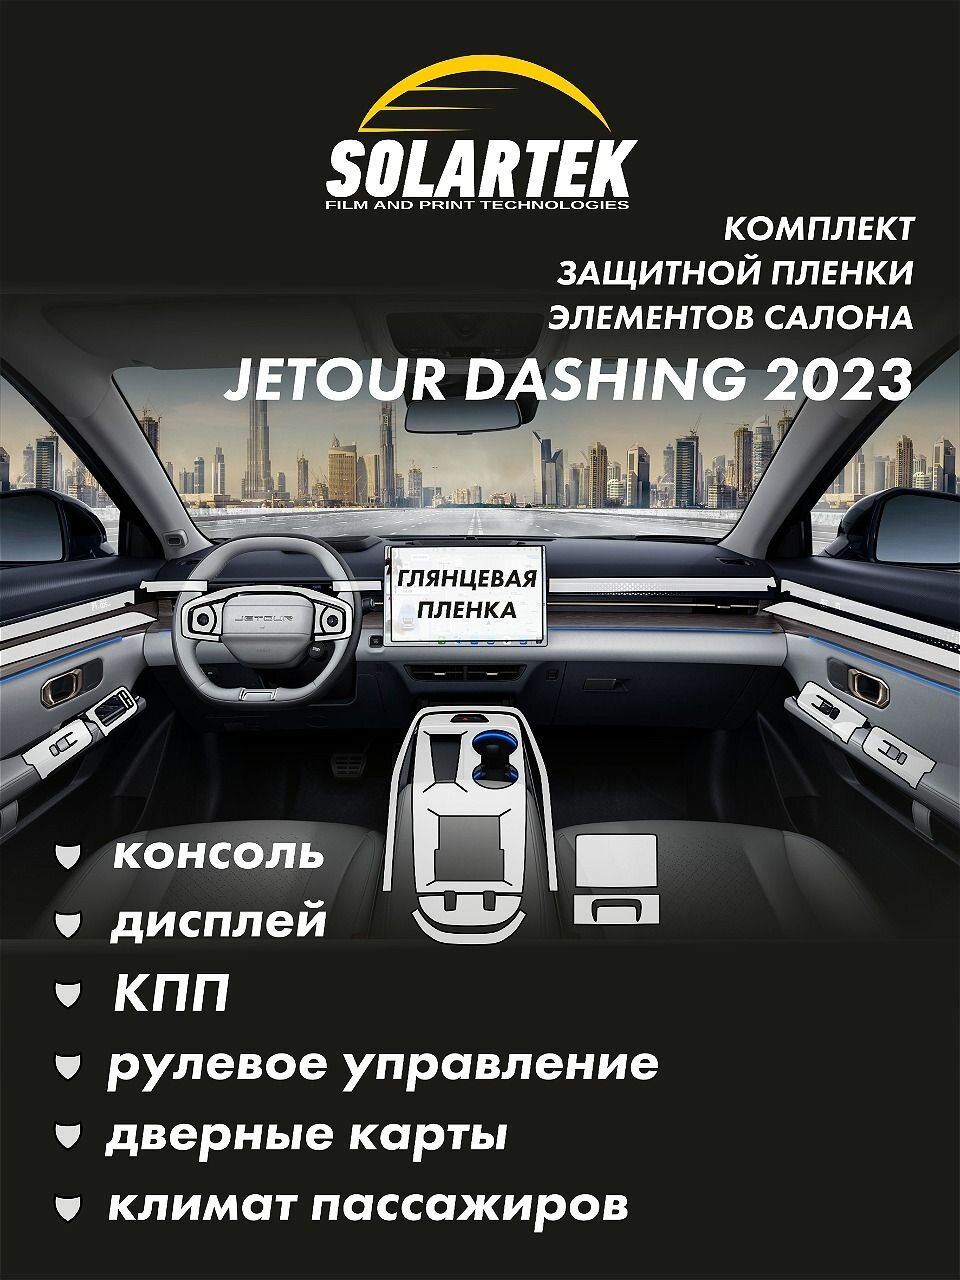 JETOUR DASHING 2023 Комплект защитных глянцевых пленок на консоль, дисплей, кпп, рулевое управление, дверные карты и климат пассажиров